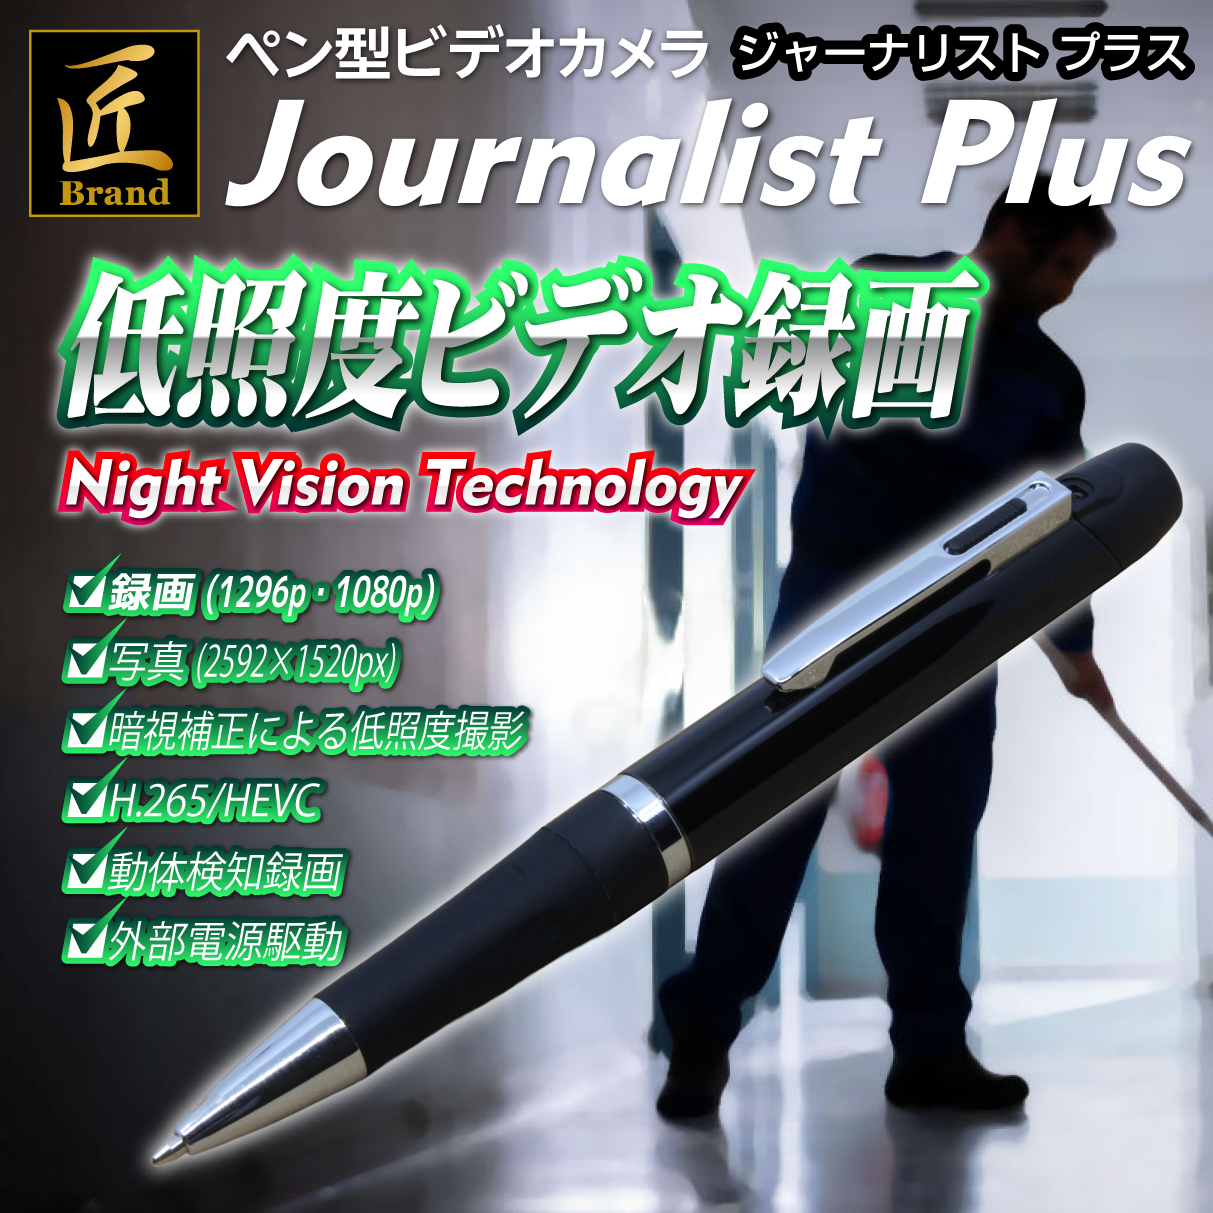 【小型カメラ】ペン型ビデオカメラ(匠ブランド)『Journalist-2.3K』(ジャーナリスト2.3K)